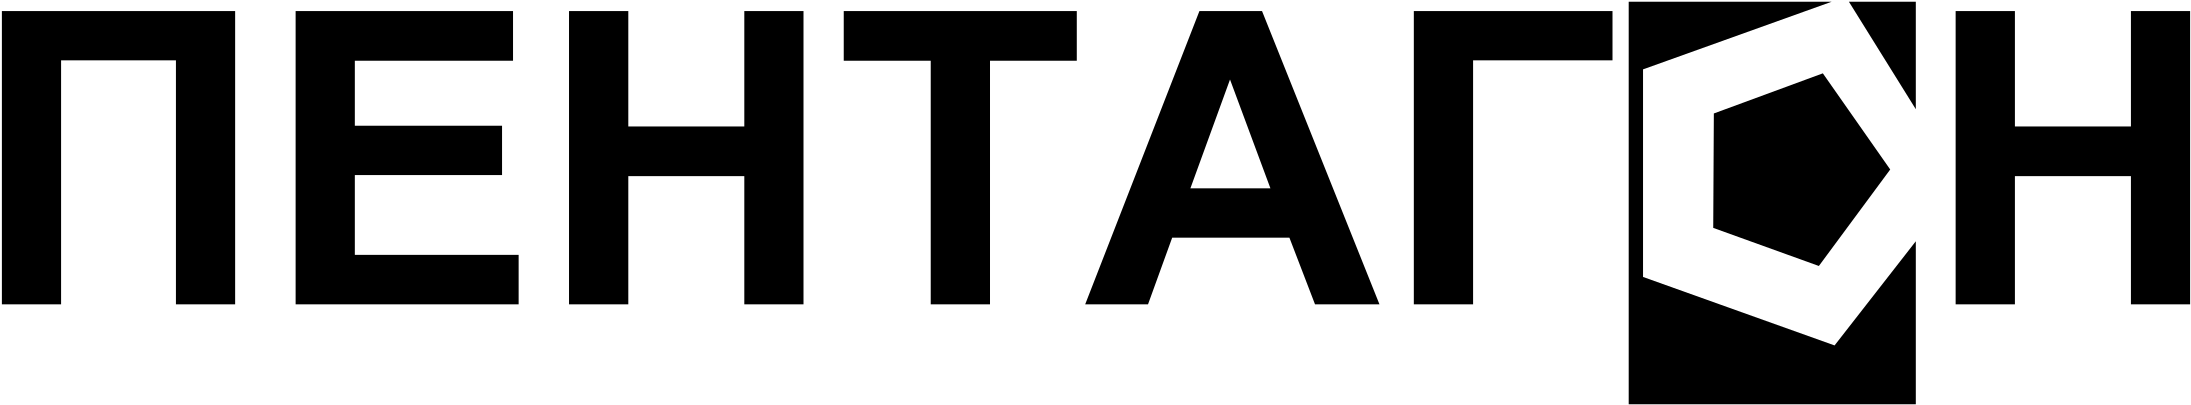 Pentagon Logo Black Background PNG